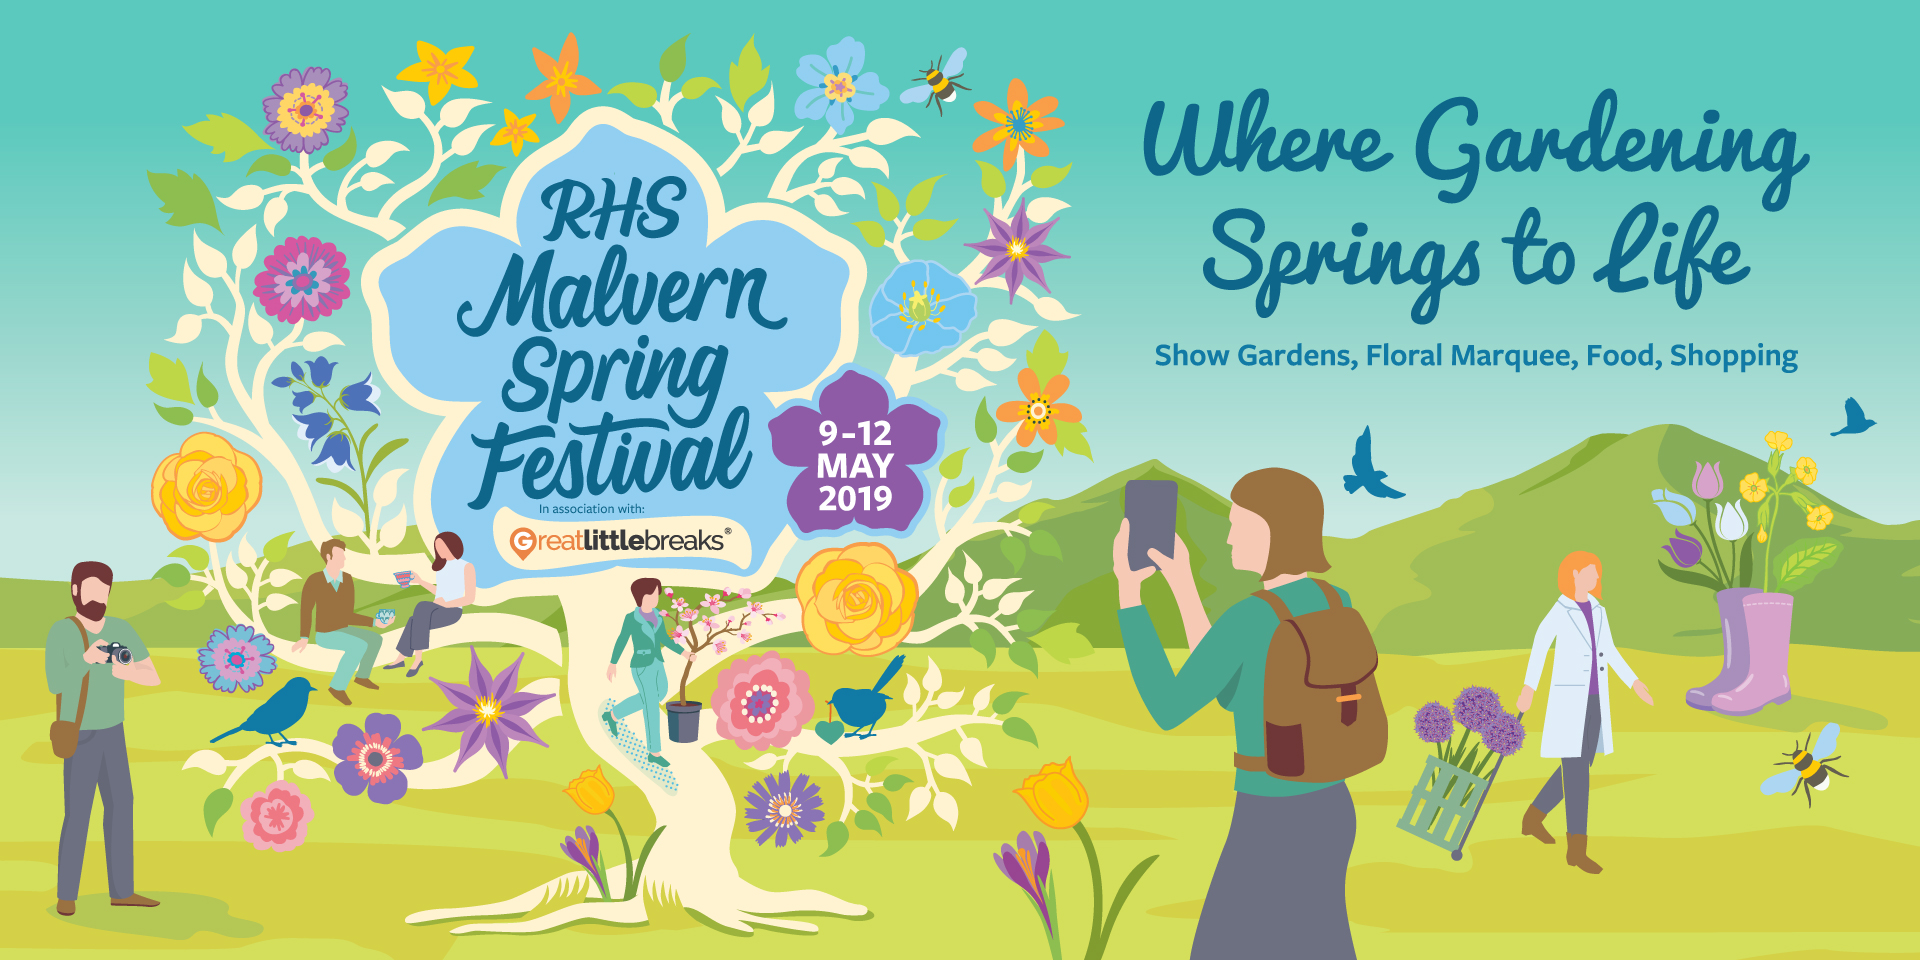 RHS Malvern Spring Festival marketing advertising